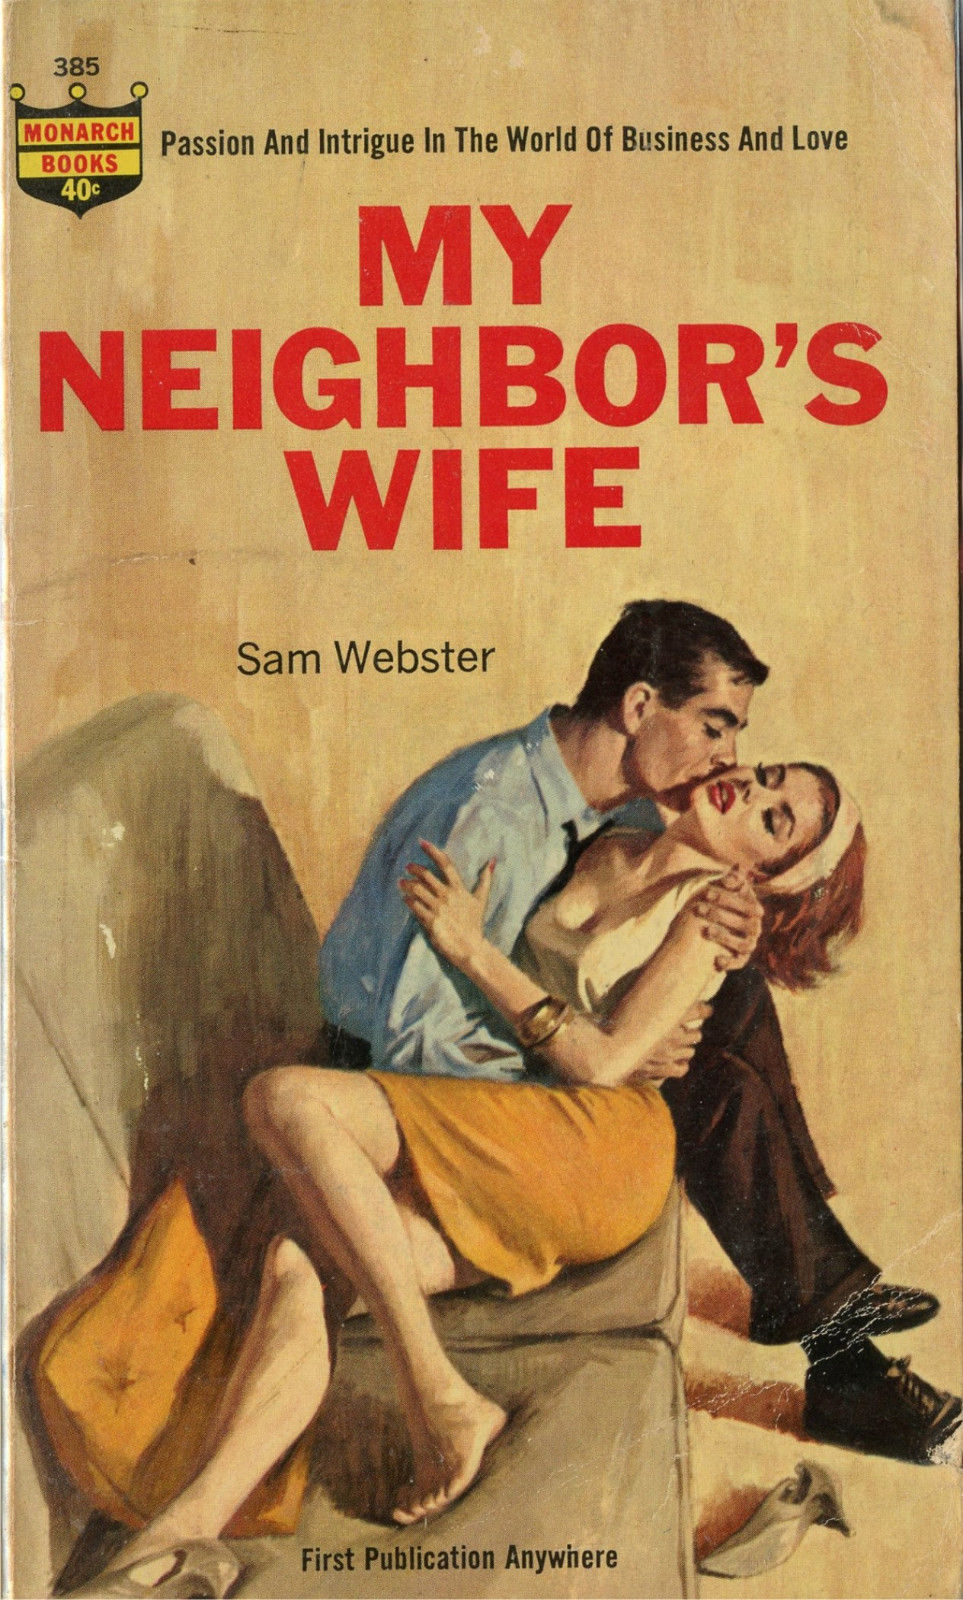 Neighbors wife 2. Szmolarda qalgan hislarim. Neighbor's wife.